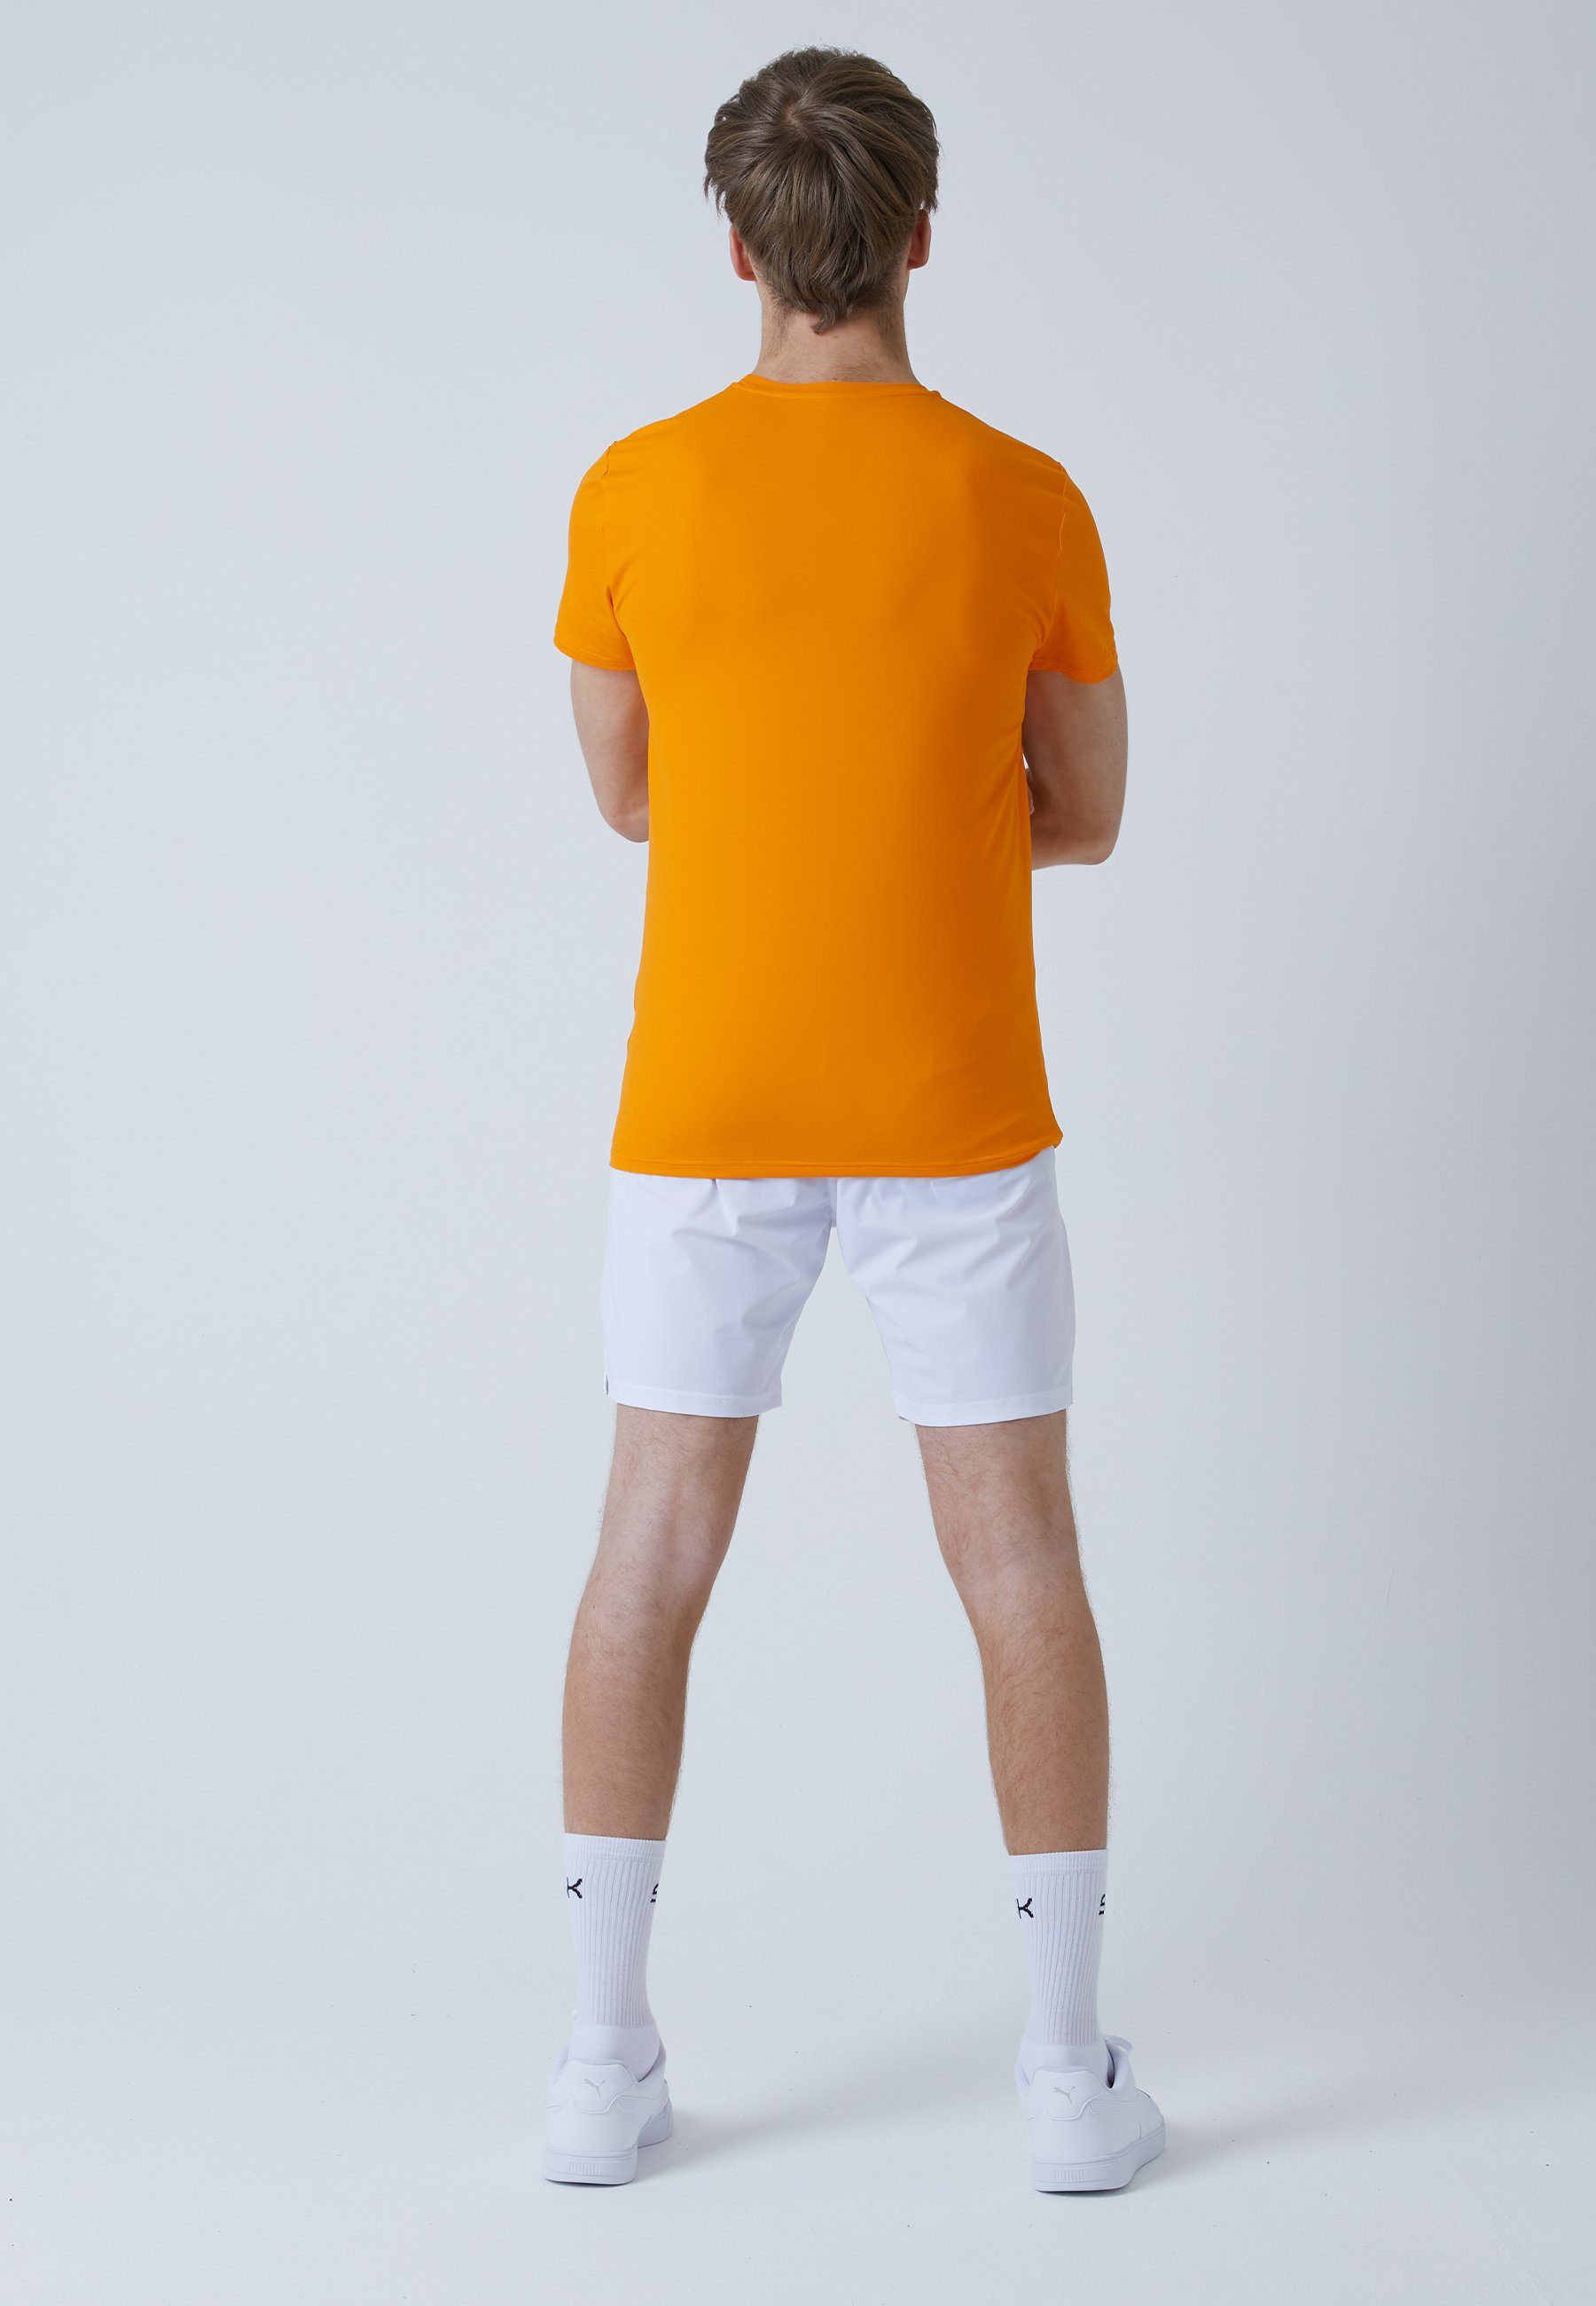 T-Shirt Jungen & Tennis Funktionsshirt orange Rundhals SPORTKIND Herren